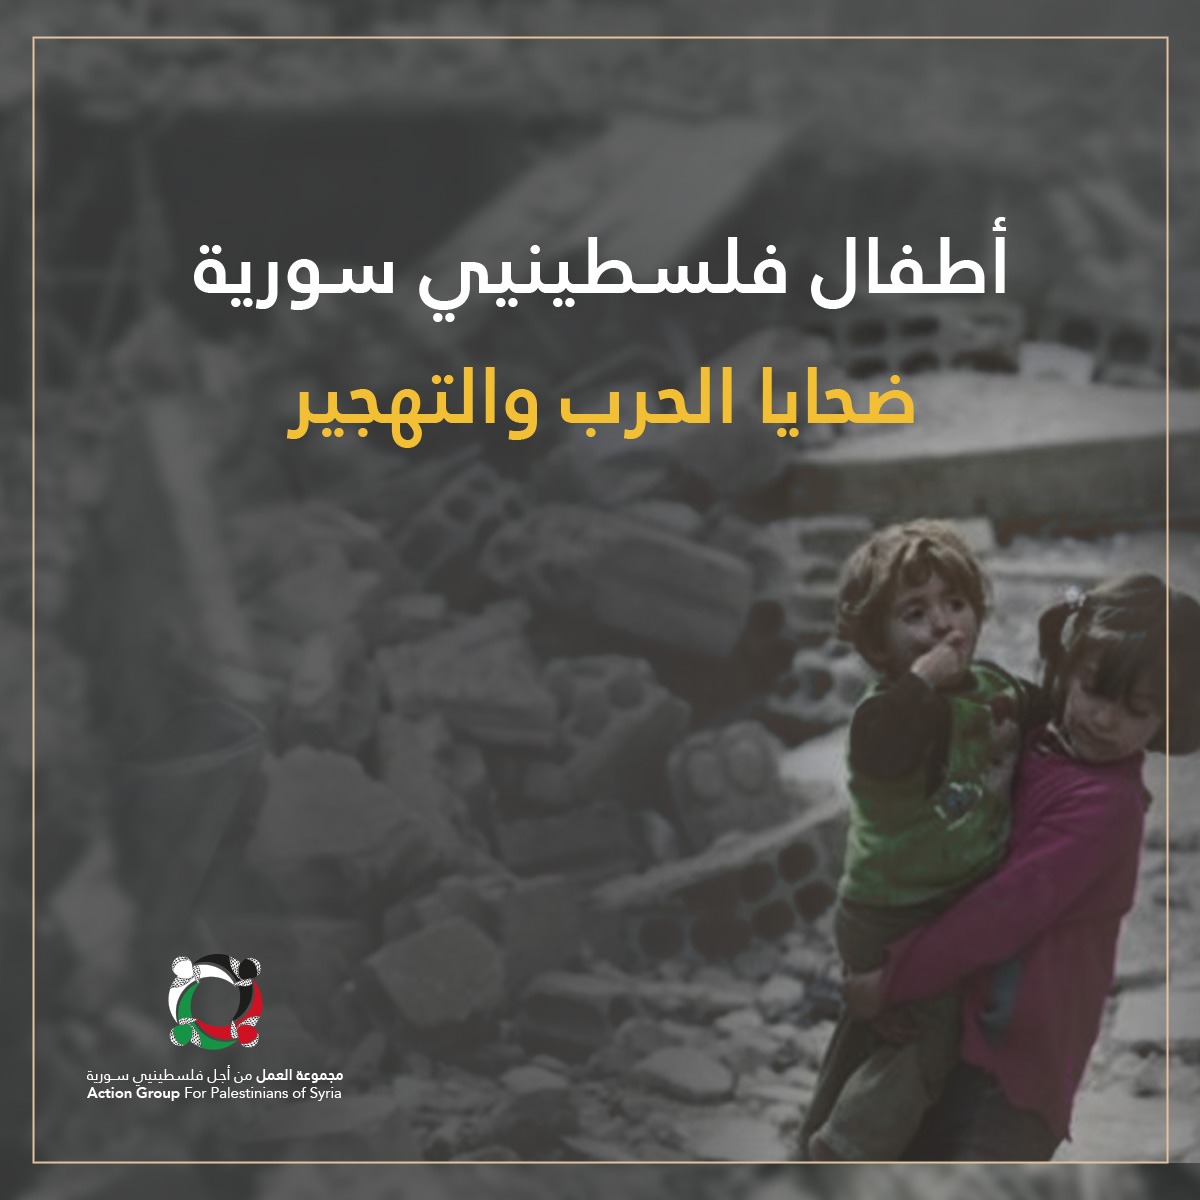 بودكاست قصة من المخيم بعنوان "أطفال المخيمات الفلسطينية في سورية بين ضربات الحرب وواقع التهجير " (ح2) 